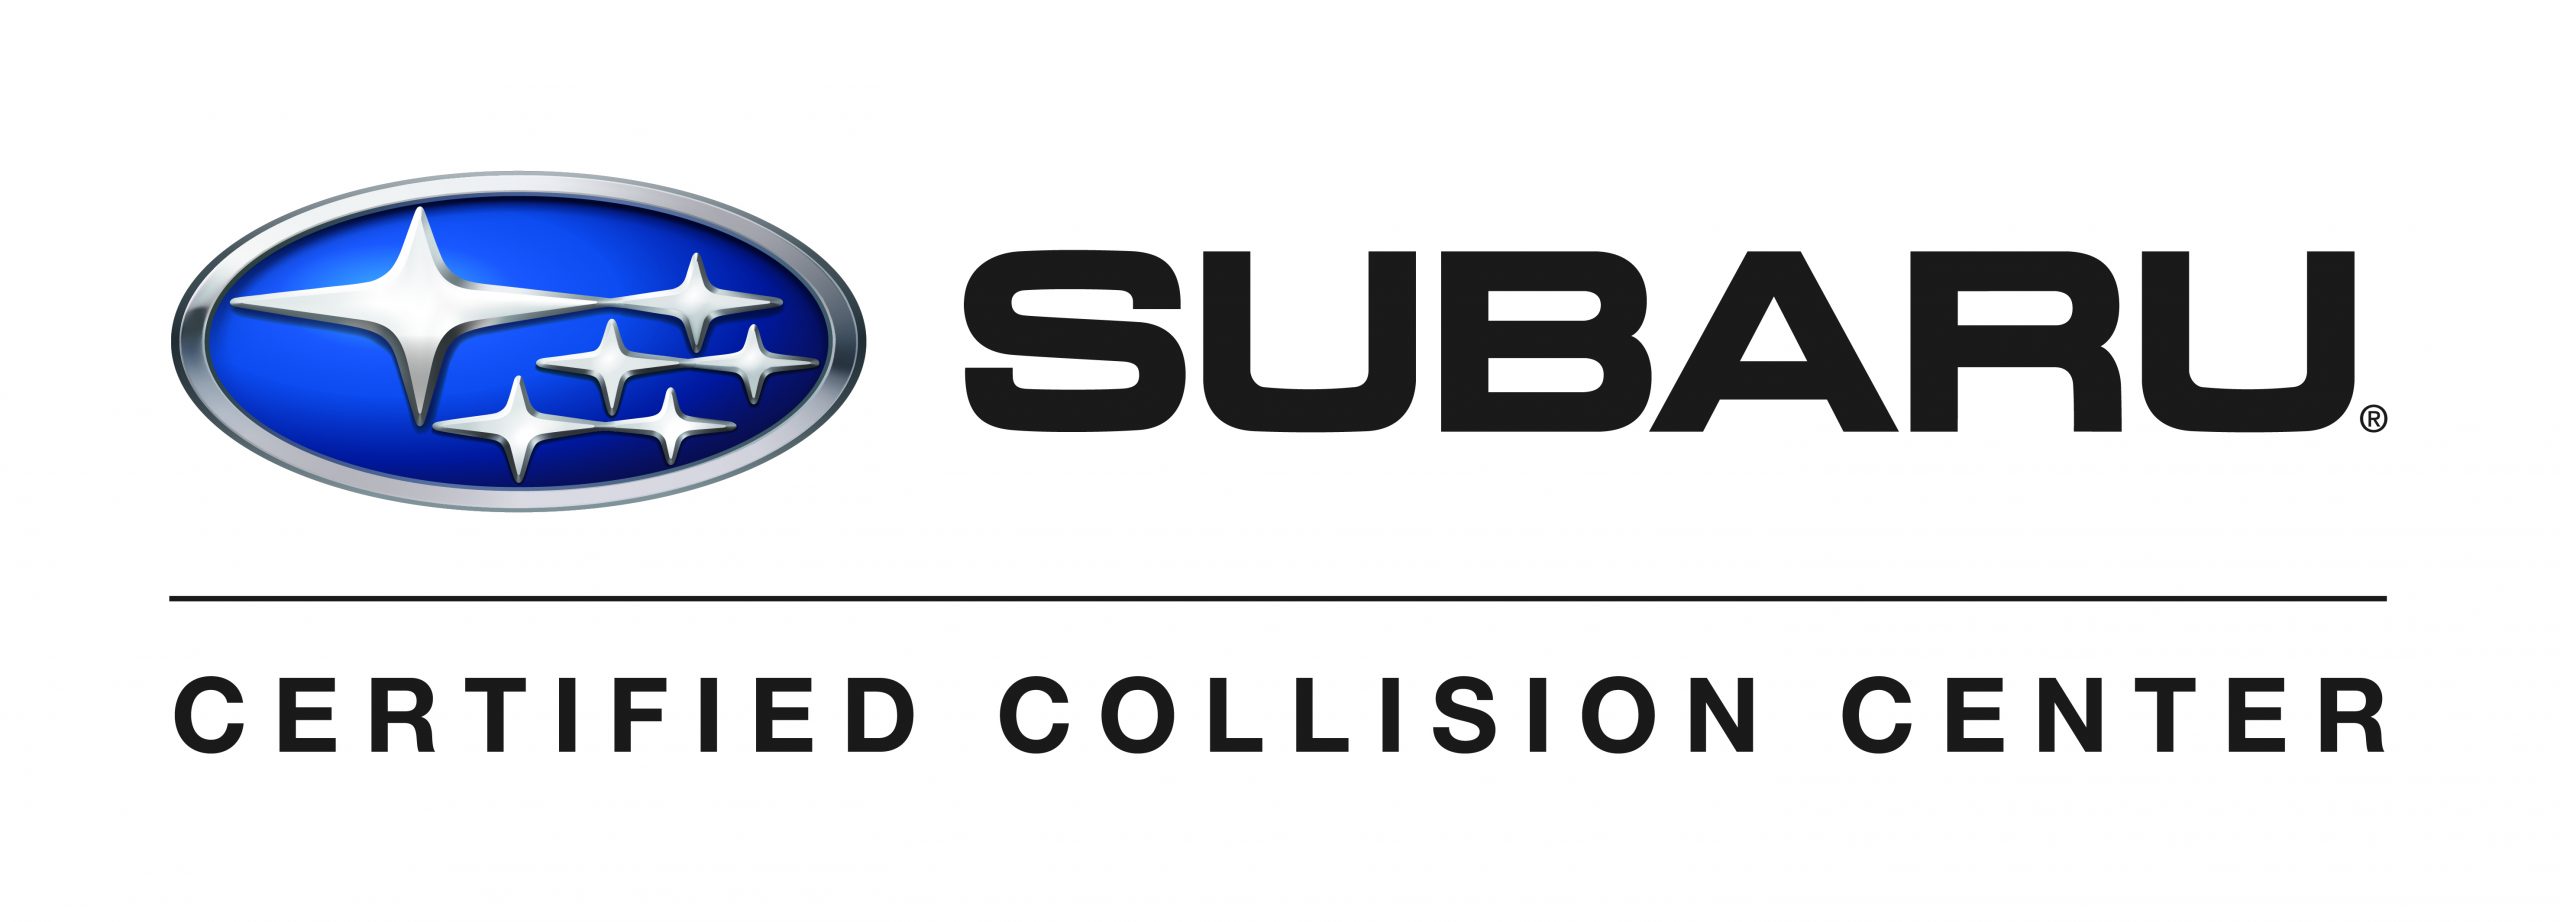 Subaru certified